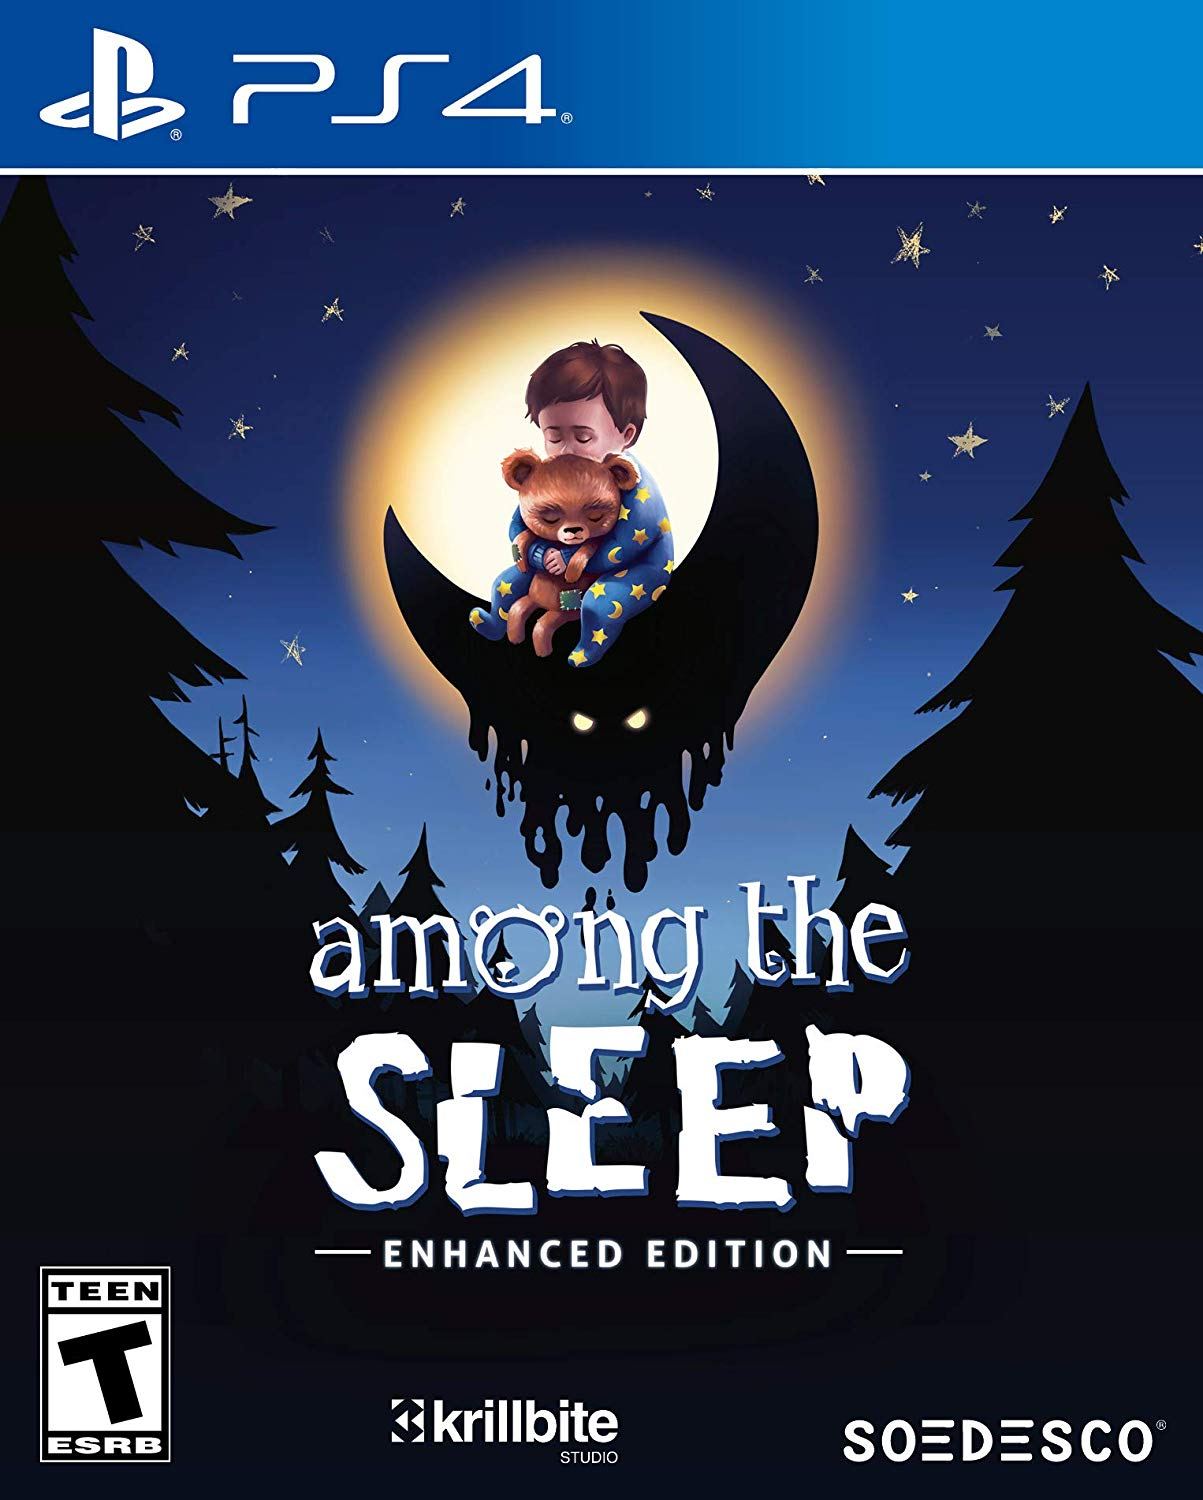 among the sleep enhanced edition download free